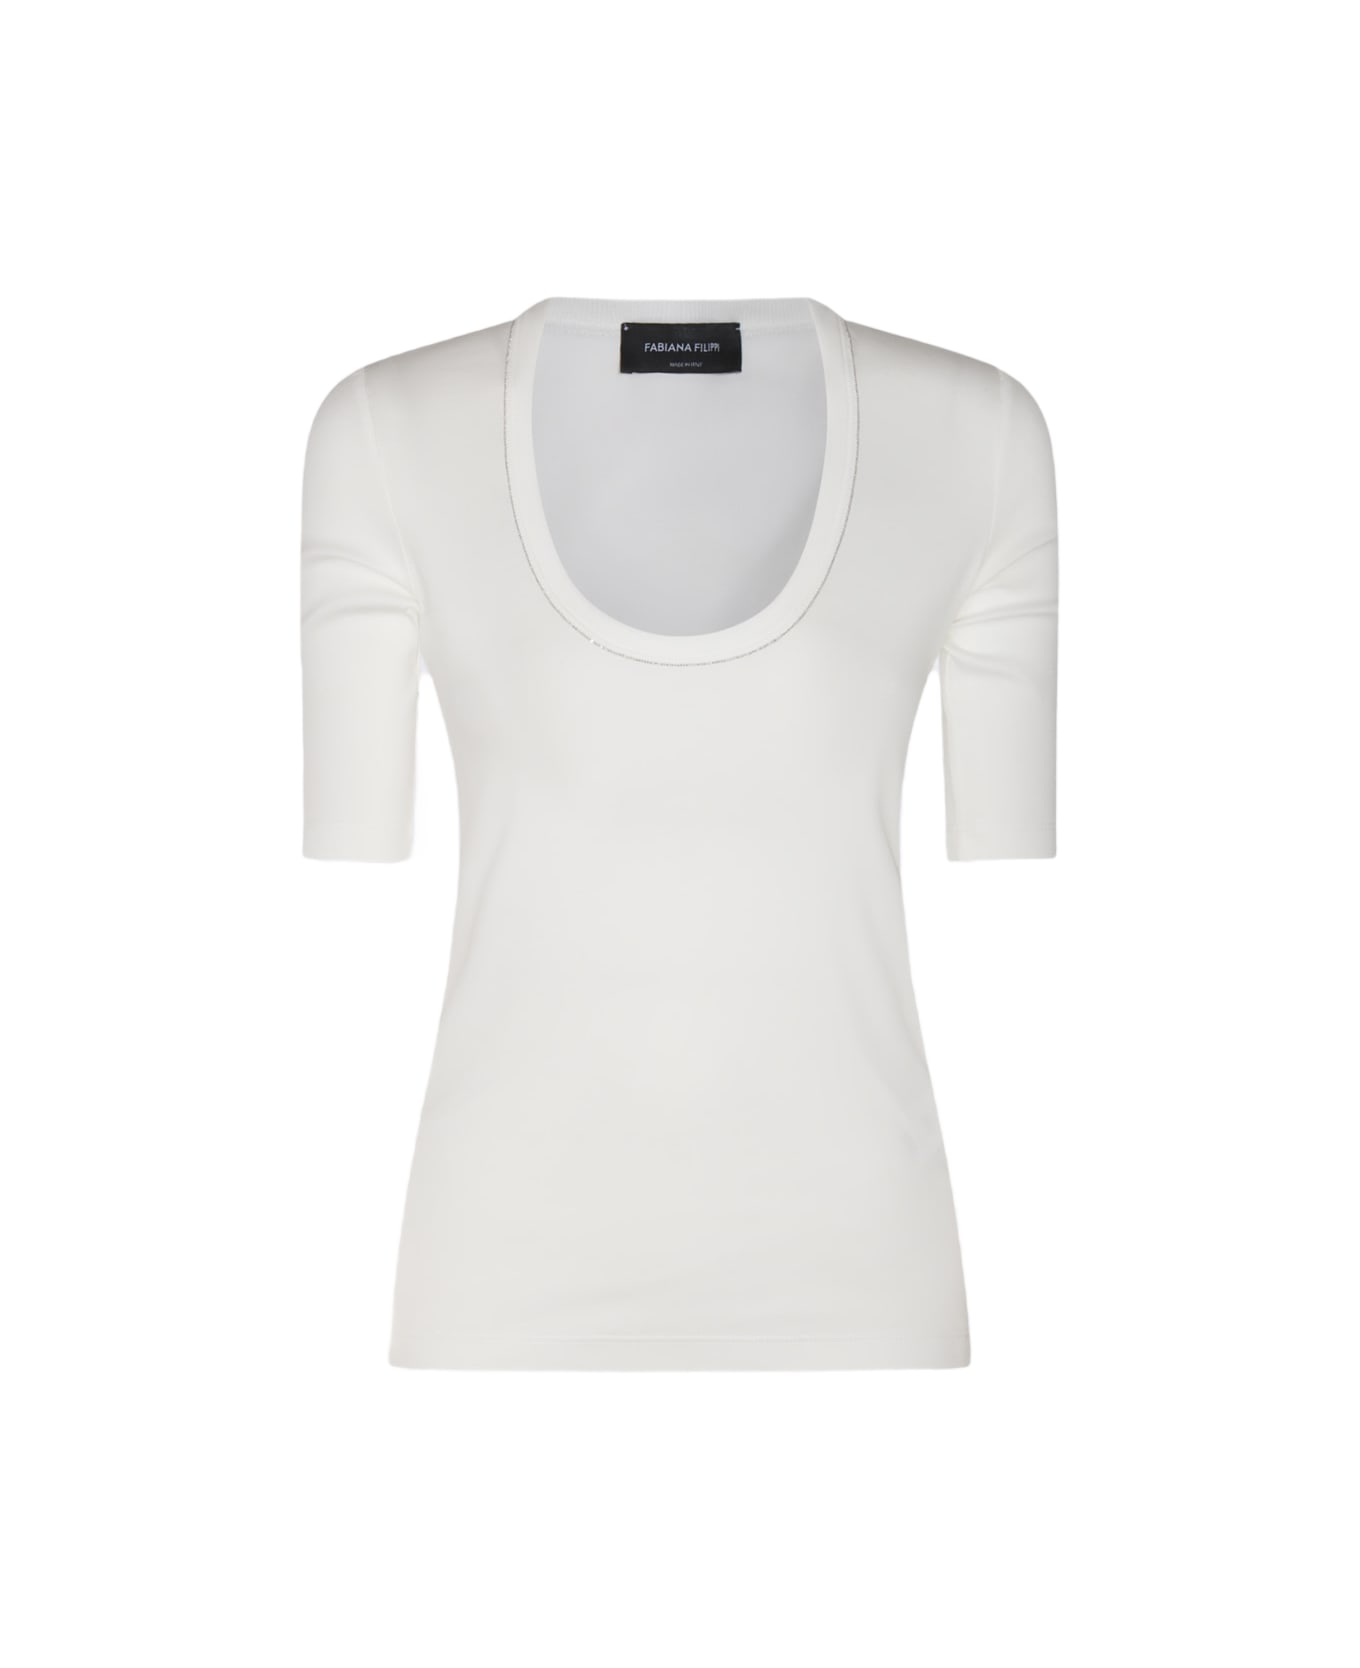 Fabiana Filippi White Cotton T-shirt - White Tシャツ